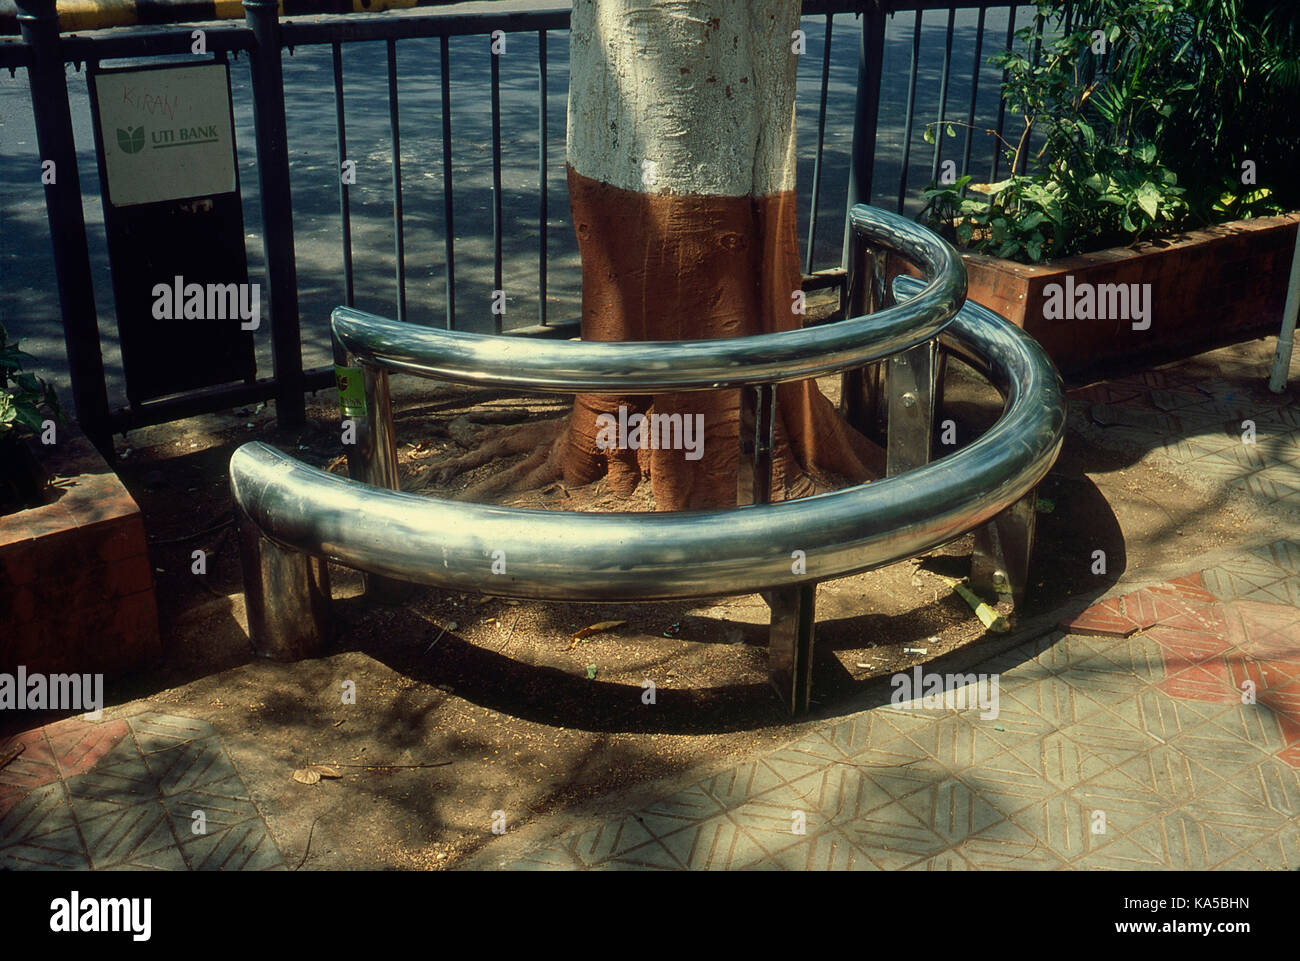 stainless steel tube sitting arrangement under tree, mumbai, maharashtra, India, Asia Stock Photo